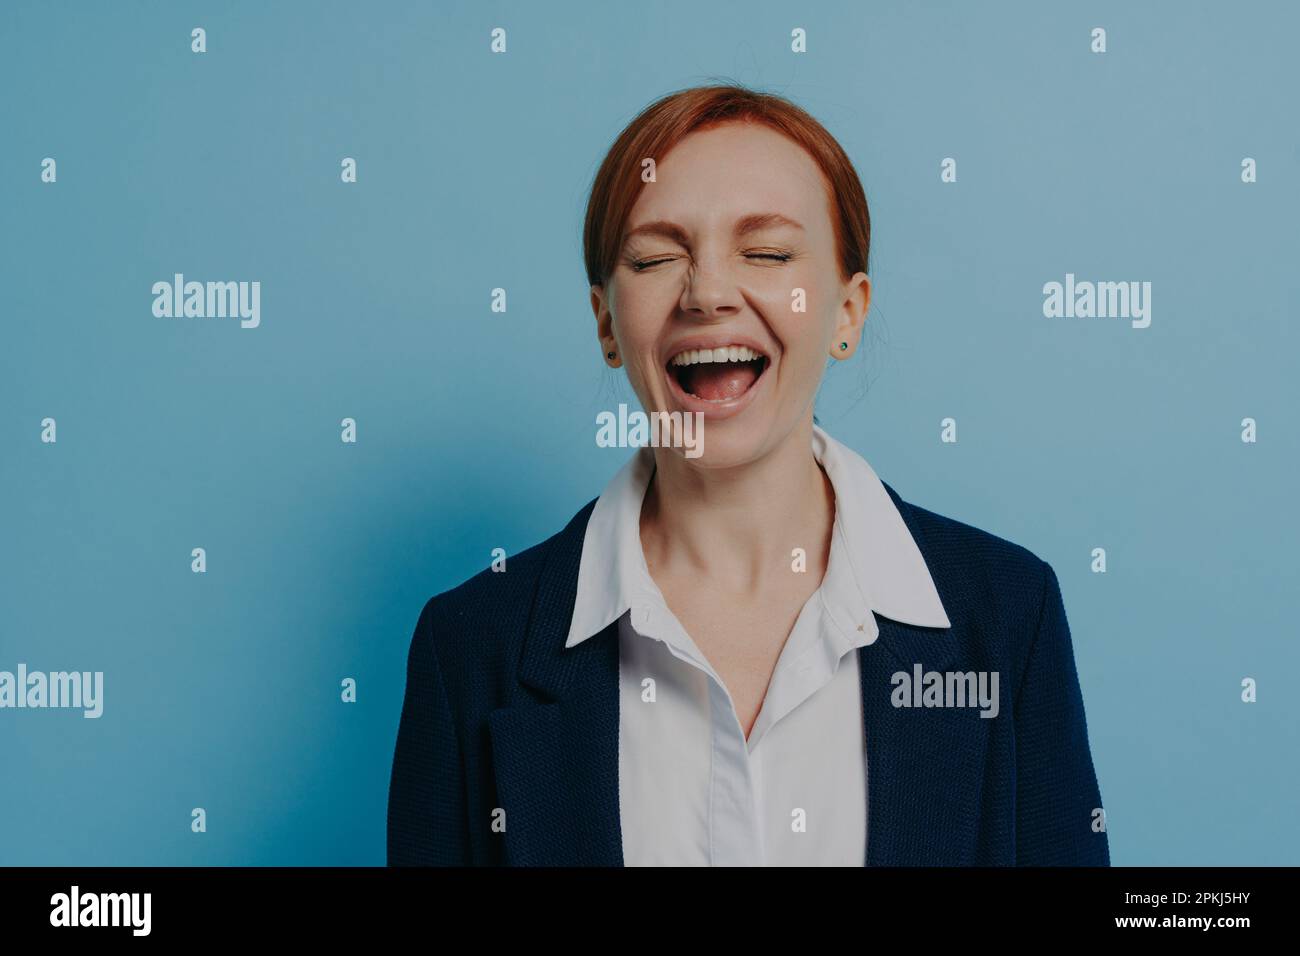 Studiofoto einer lachenden, glücklichen Frau in formeller Kleidung mit geschlossenen Augen, die isoliert an einer blauen Wand steht, einer Ingwer-Frau, die Spaß hat und lustige Anekdoten hört Stockfoto